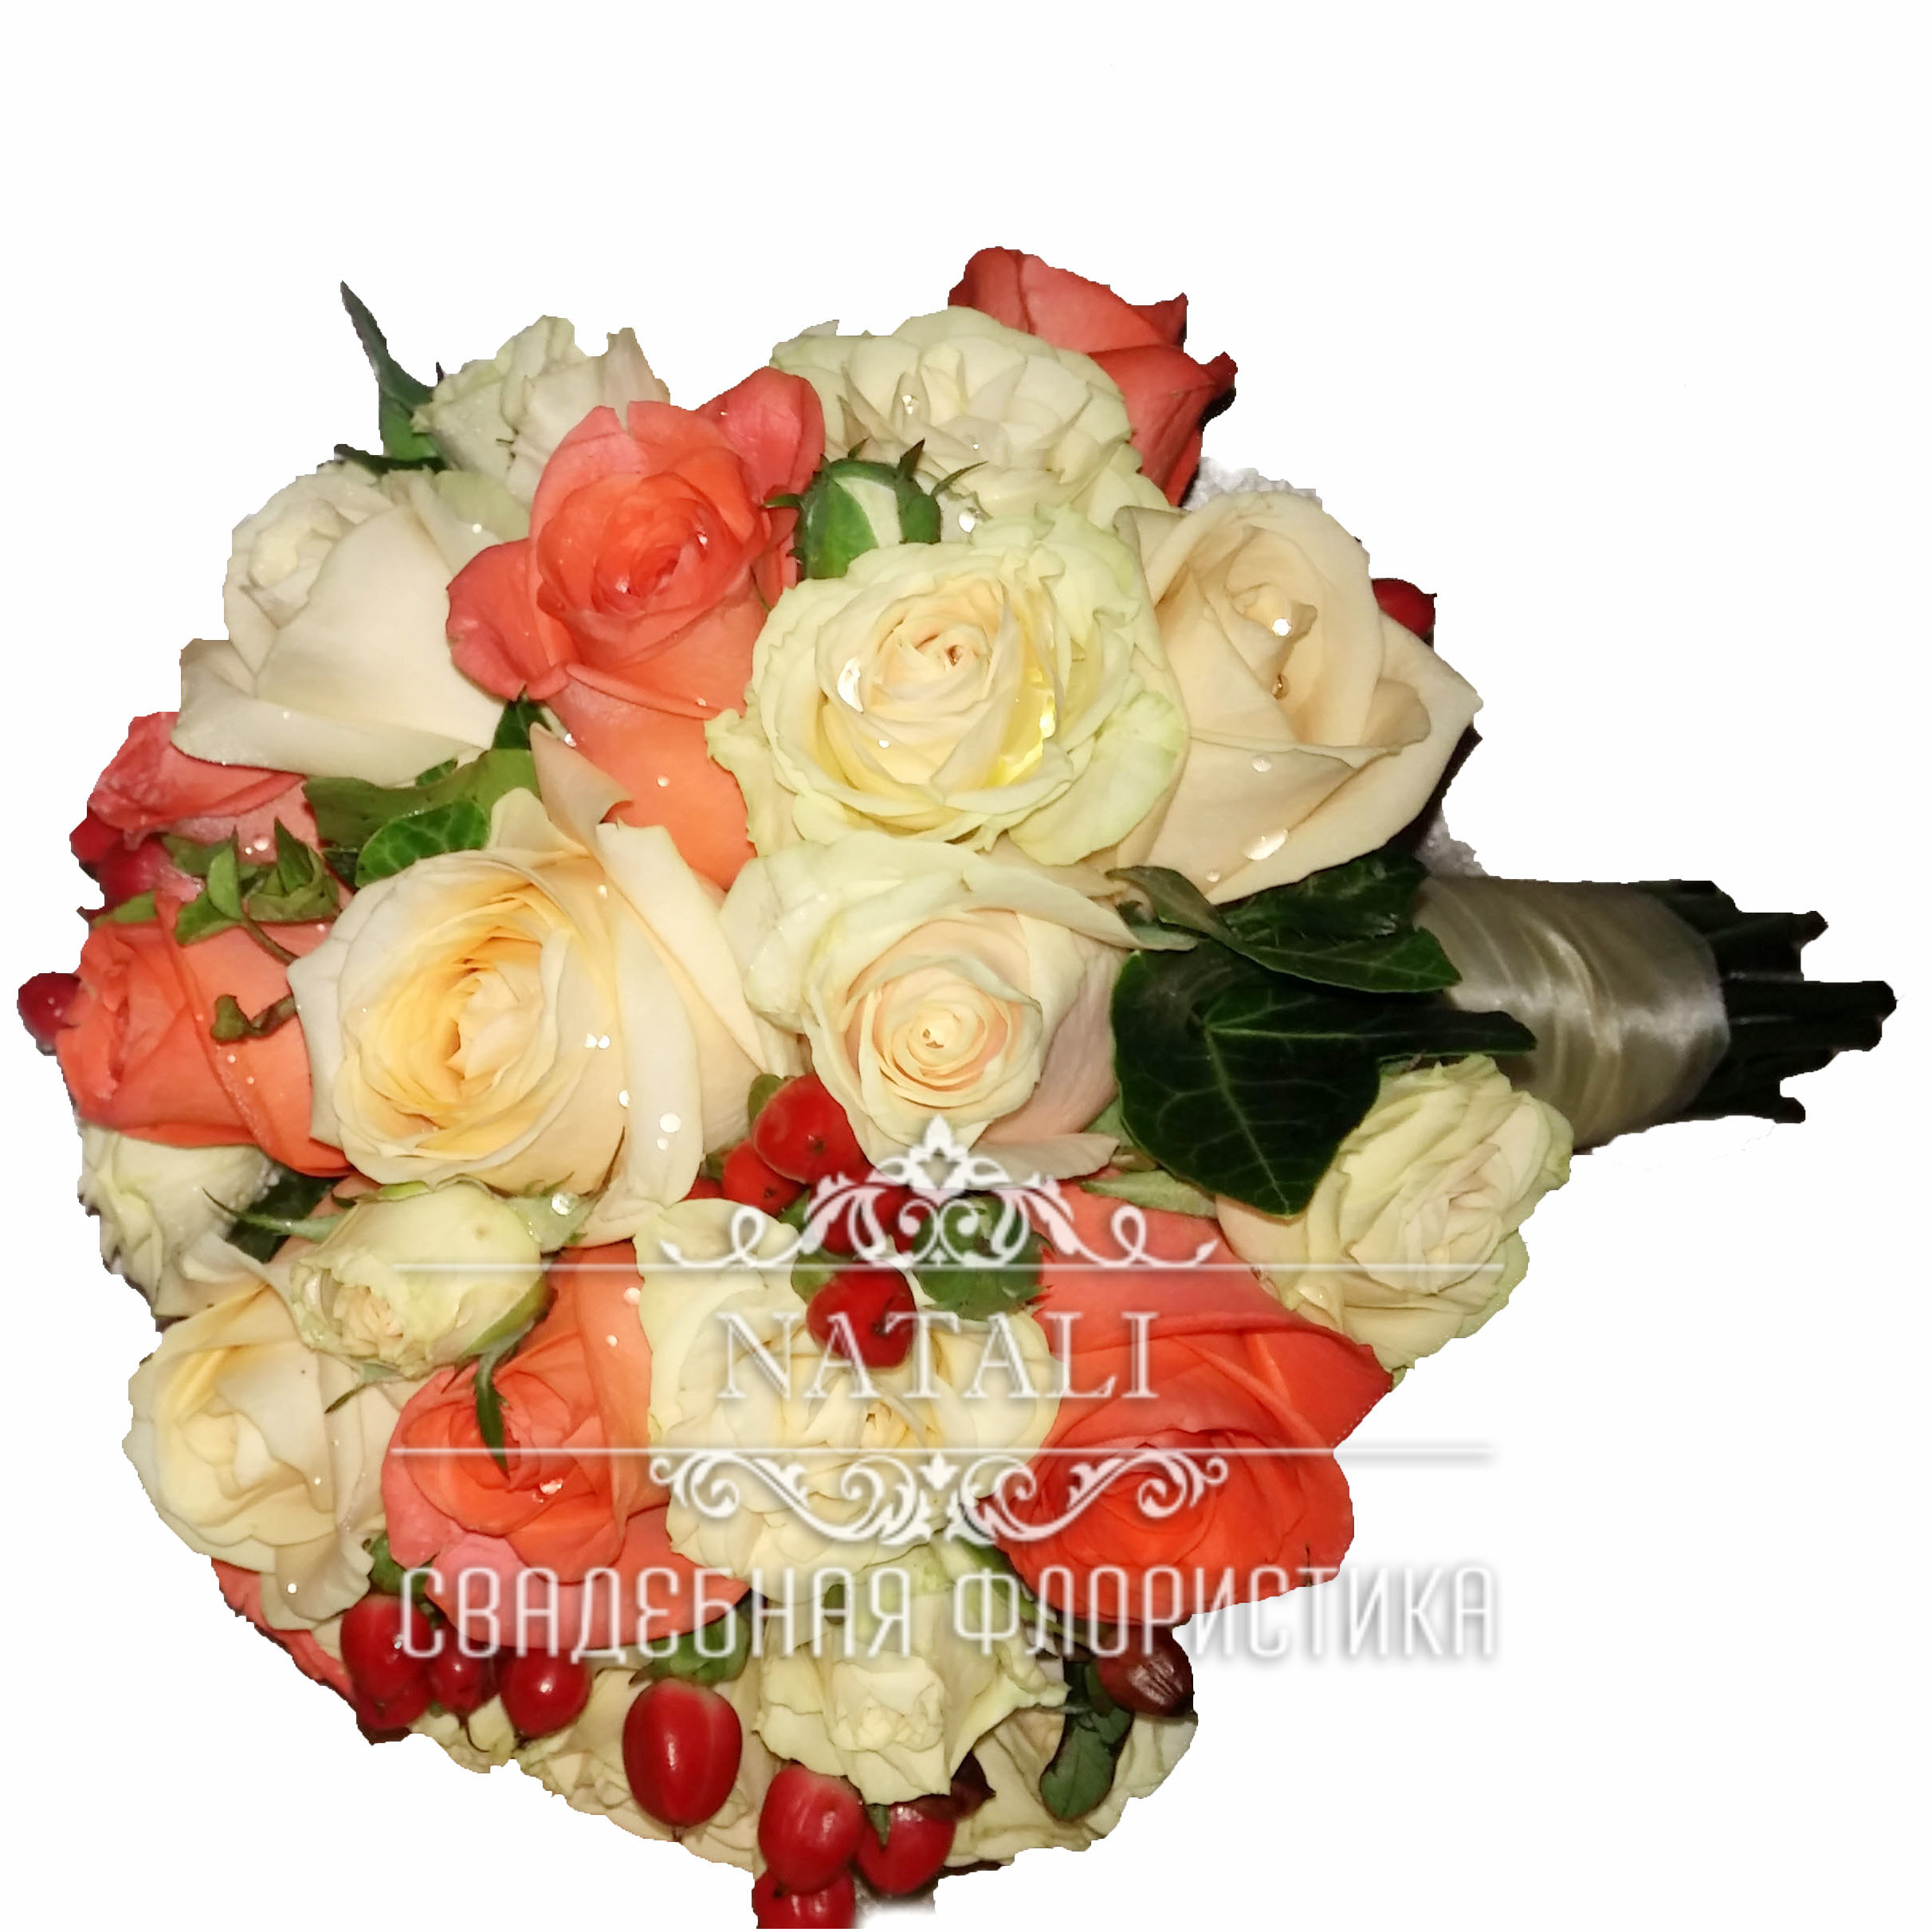 Свадебный букет" Вау" из трех видов роз